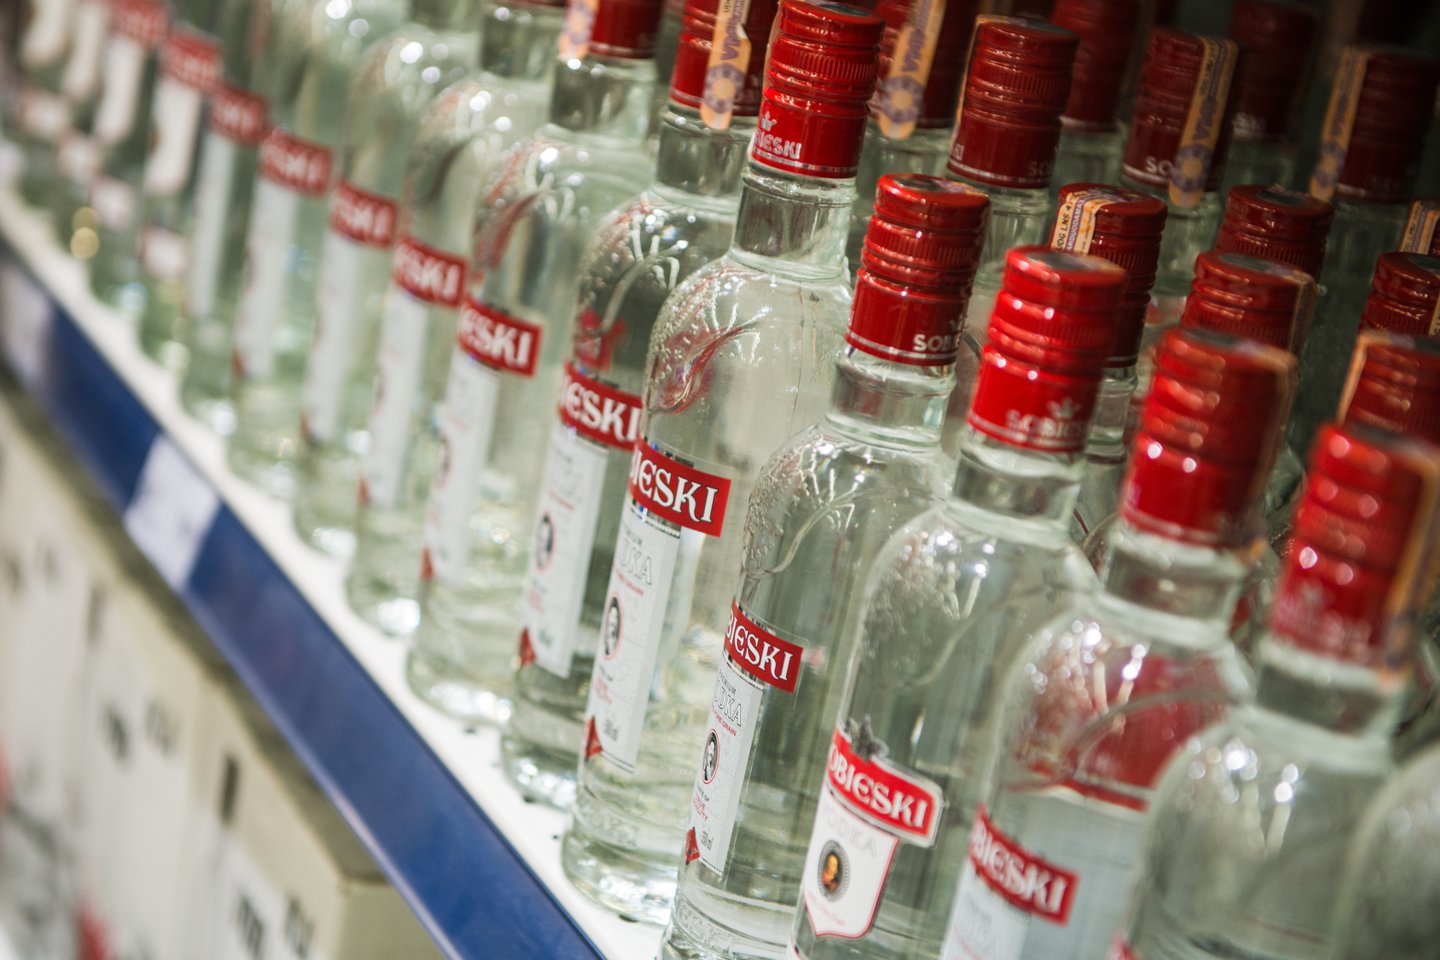 Iš prekybos centro vagišius išnešė daug alkoholio butelių.<br>J.Stacevičiaus asociatyvi nuotrauka.